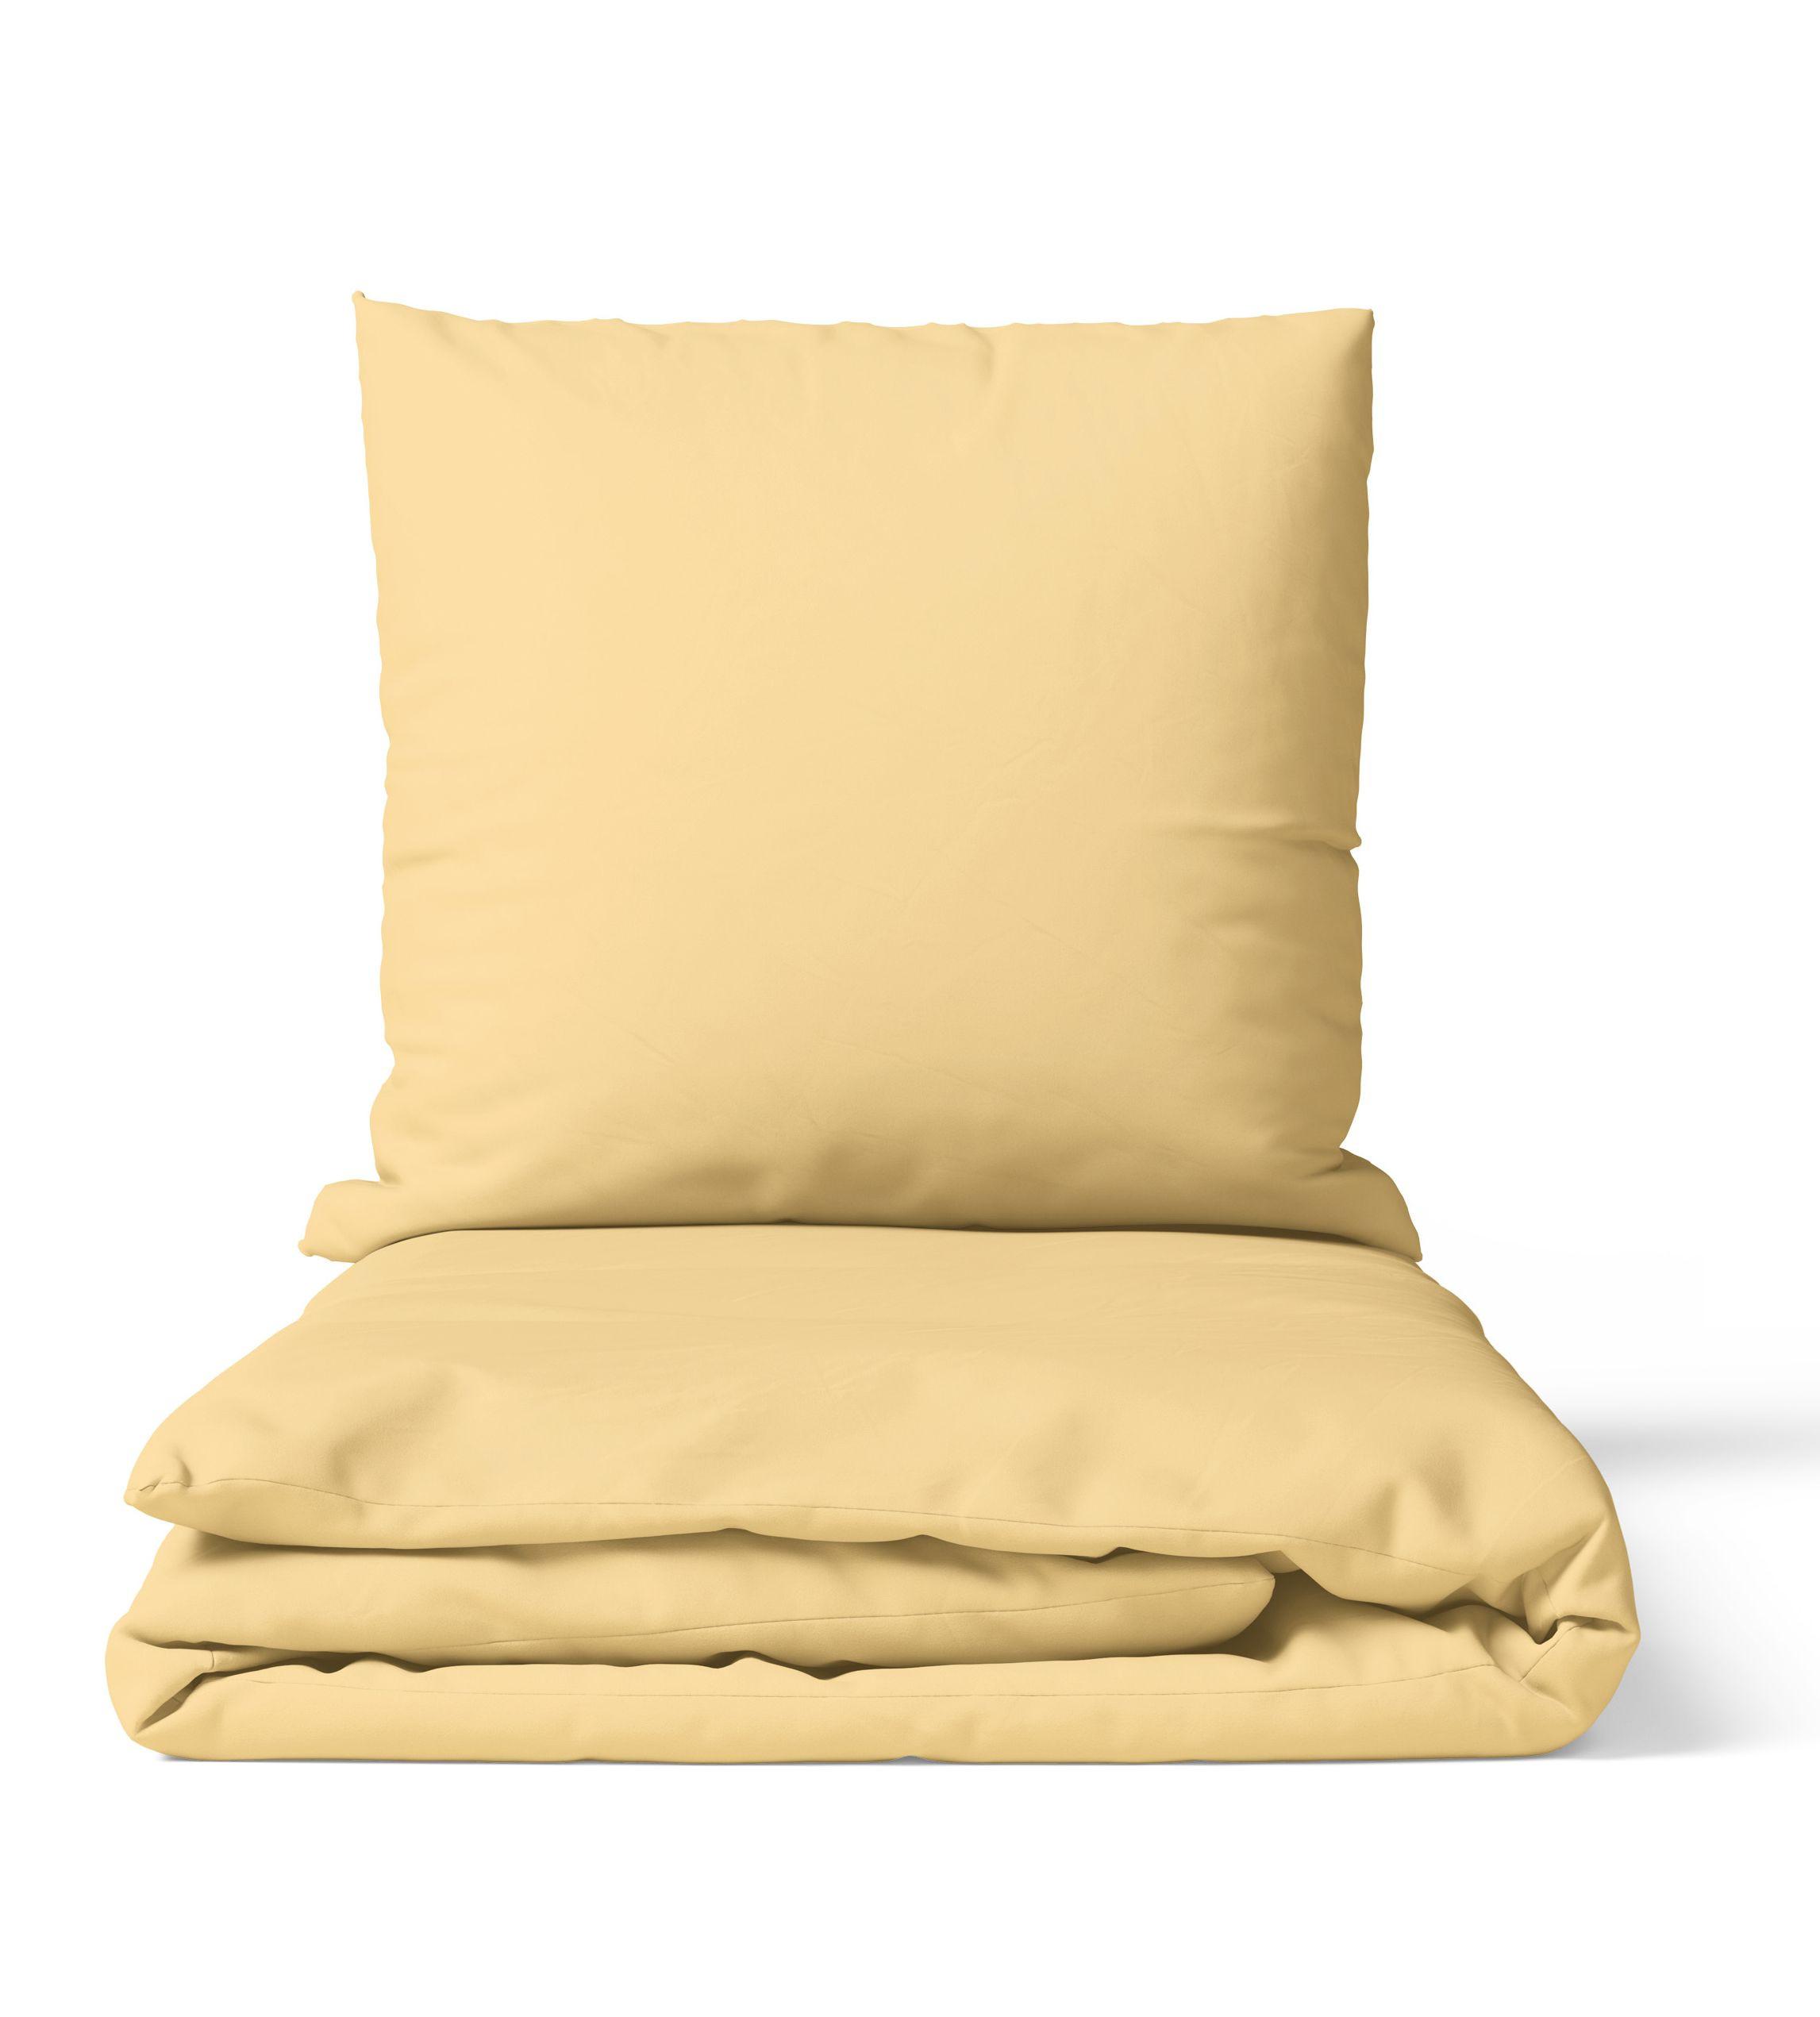 Ložní Prádlo Premium Žlutá - žlutá, Moderní, textil (140/200cm)